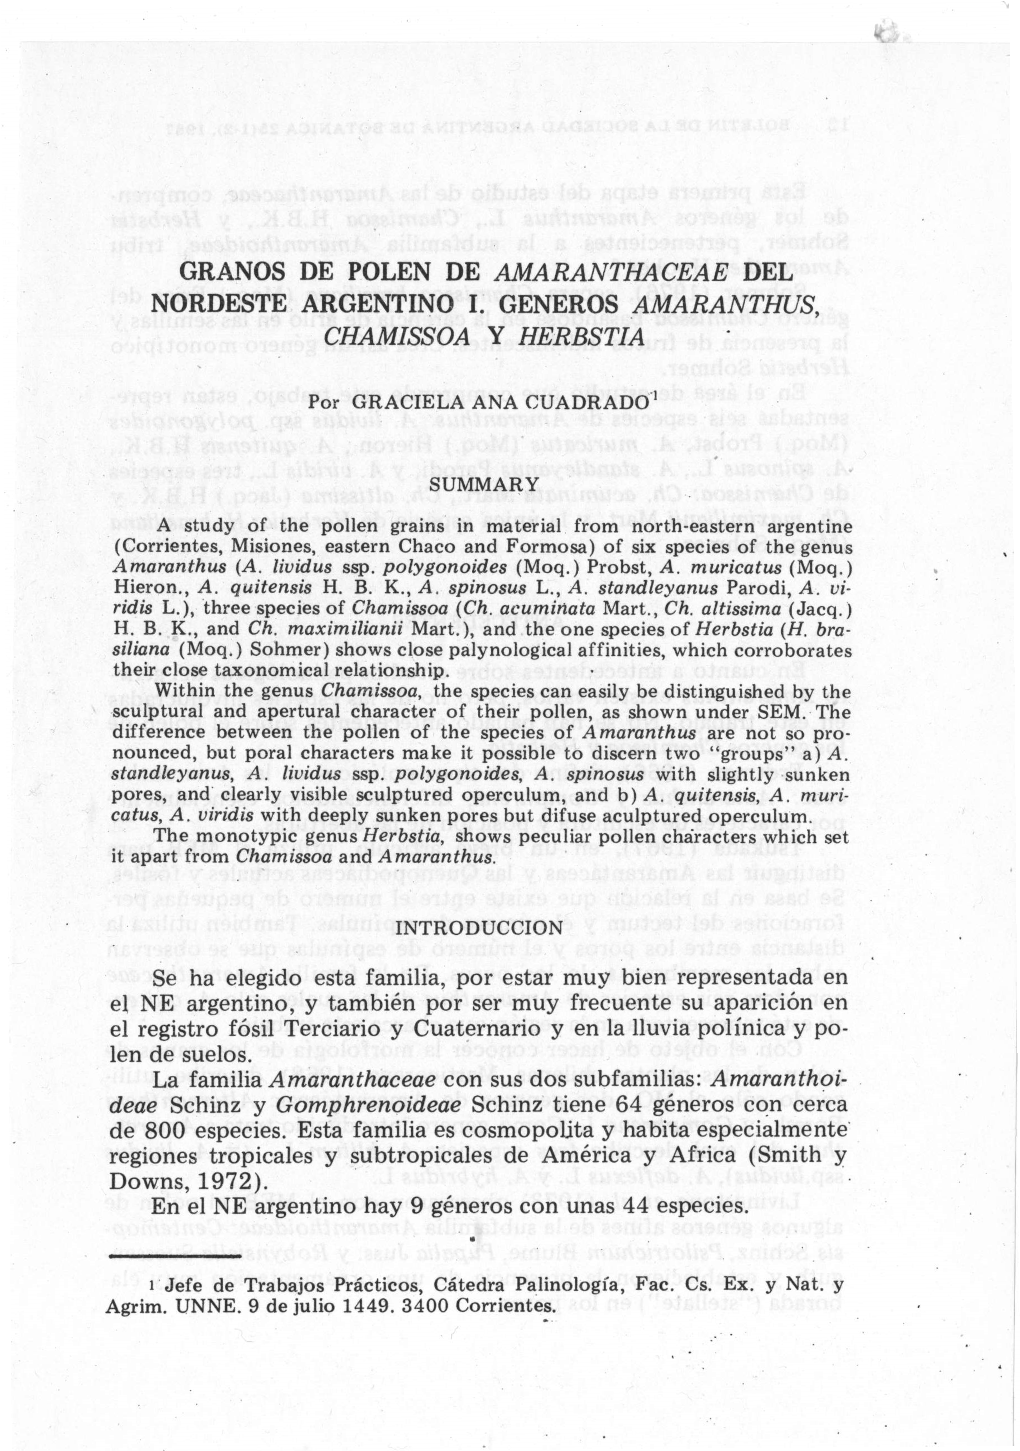 Granos De Polen De Amaranthaceae Del Nordeste Argentino I. Generos Amaranthus, Chamissoa Y Herbstia